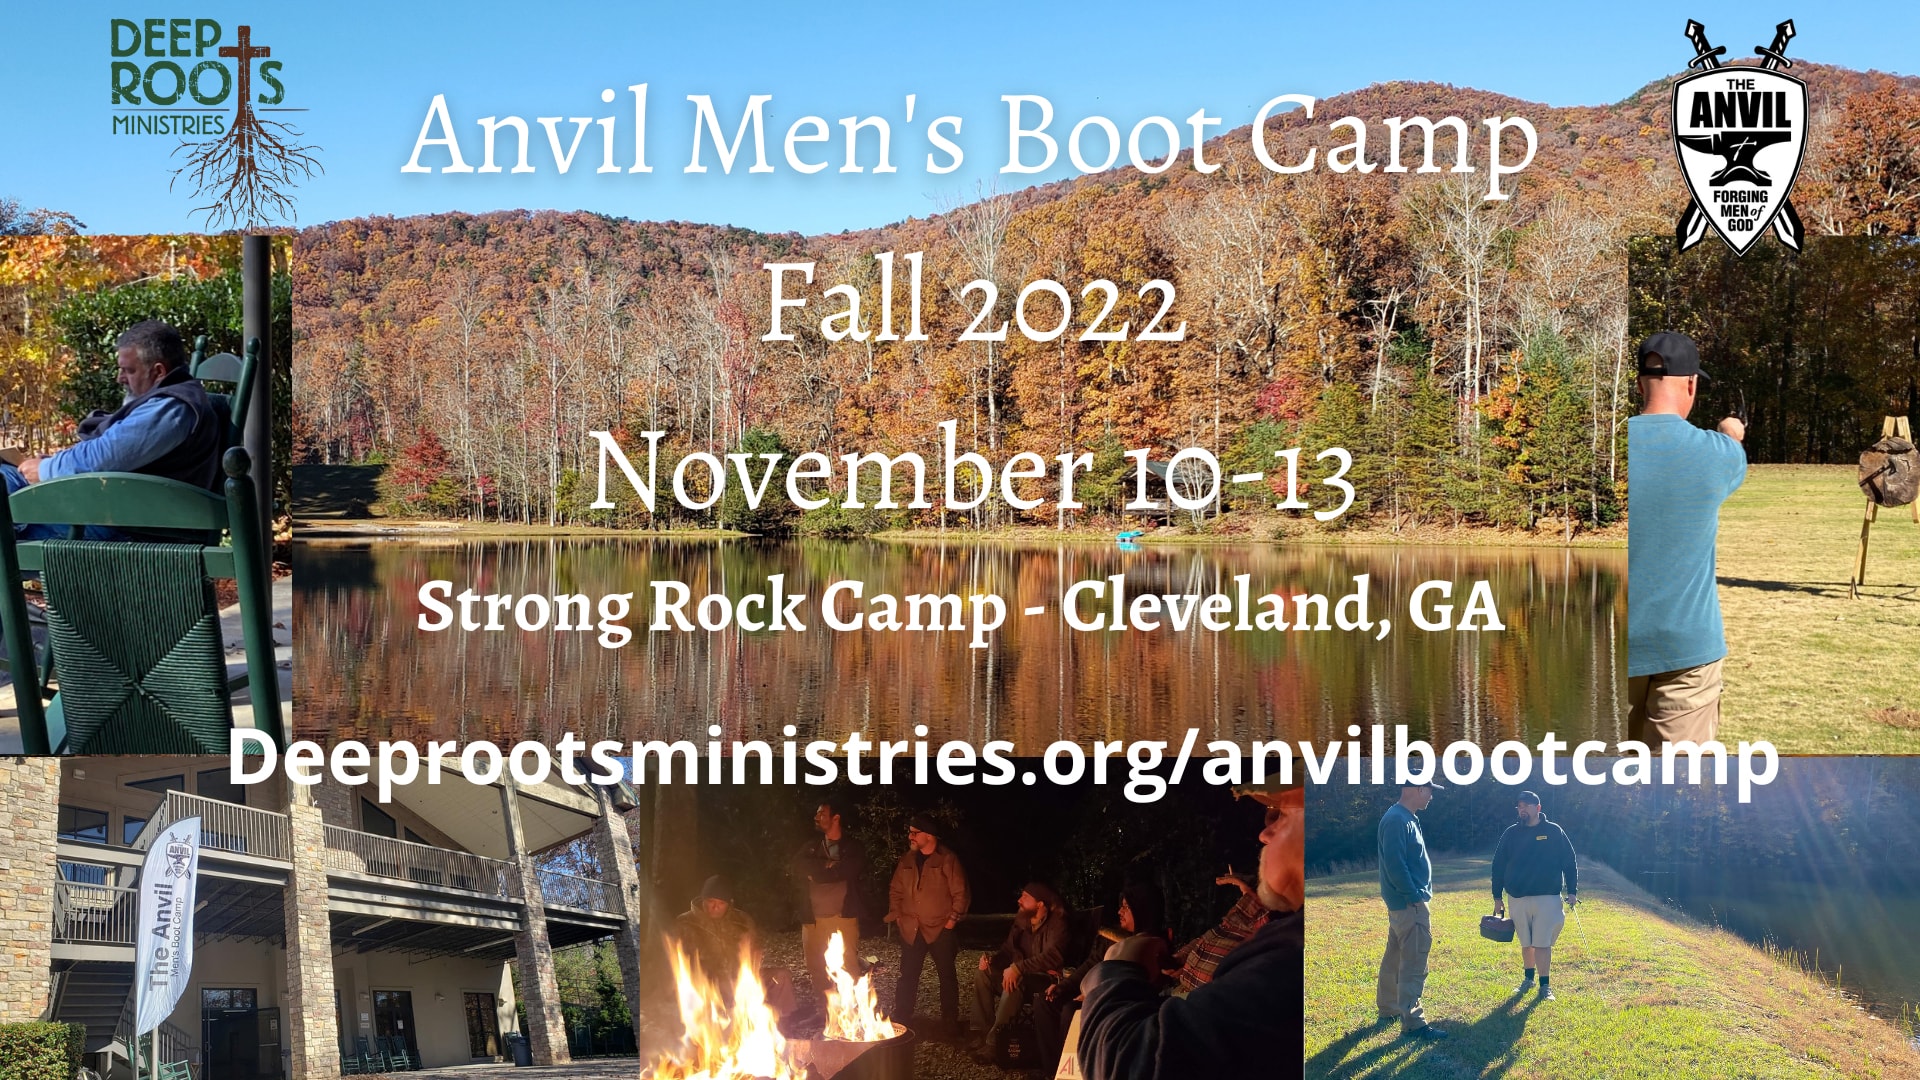 Anvil Men's Boot Camp - Fall 2022